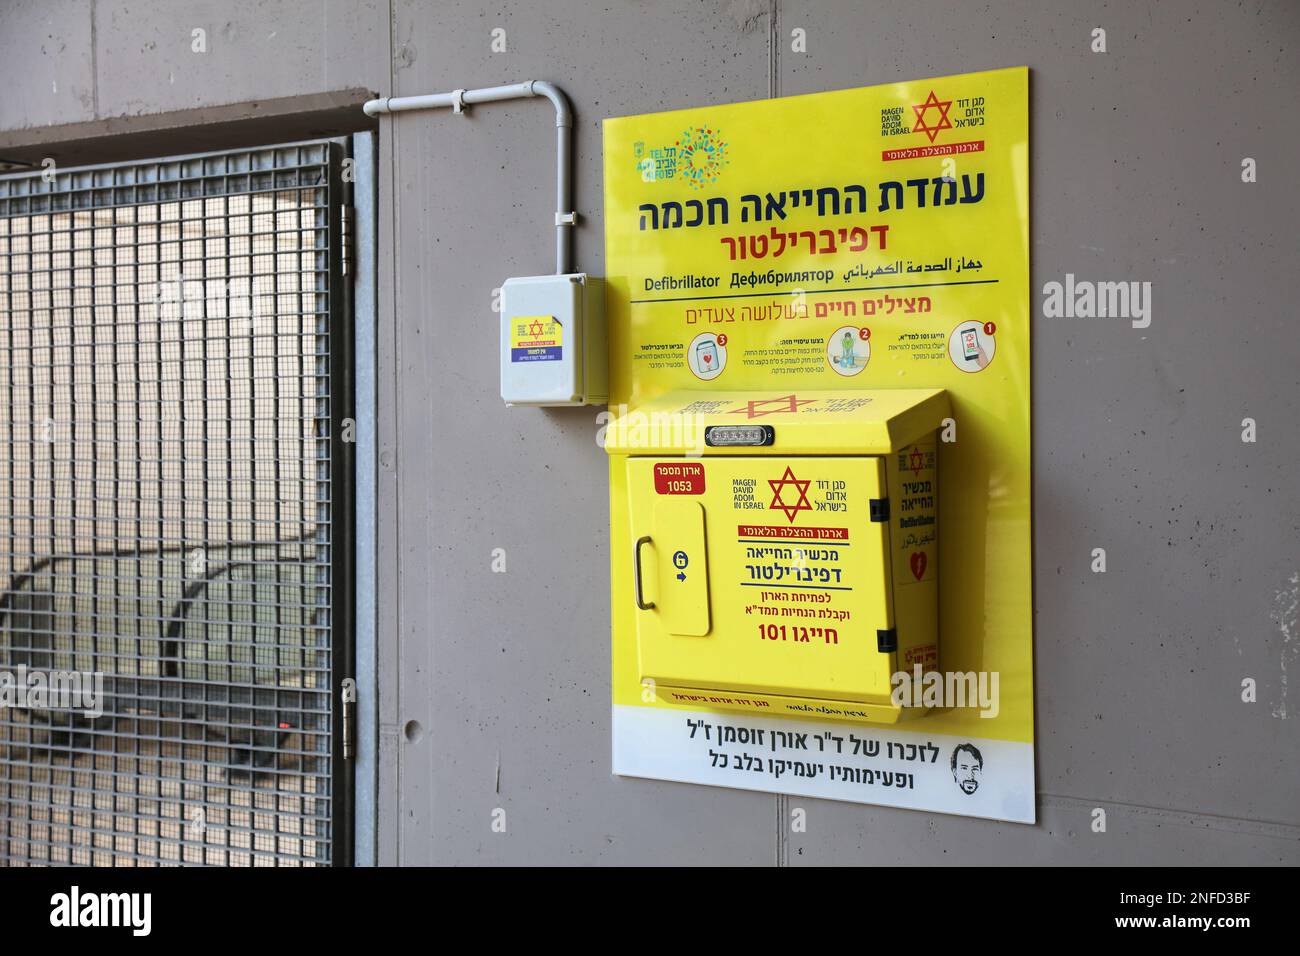 TEL AVIV, ISRAELE - 2 NOVEMBRE 2022: Defibrillatore semiautomatico esterno (AED) montato a parete dispositivo medico portatile nello spazio pubblico dello stadio sportivo in Foto Stock